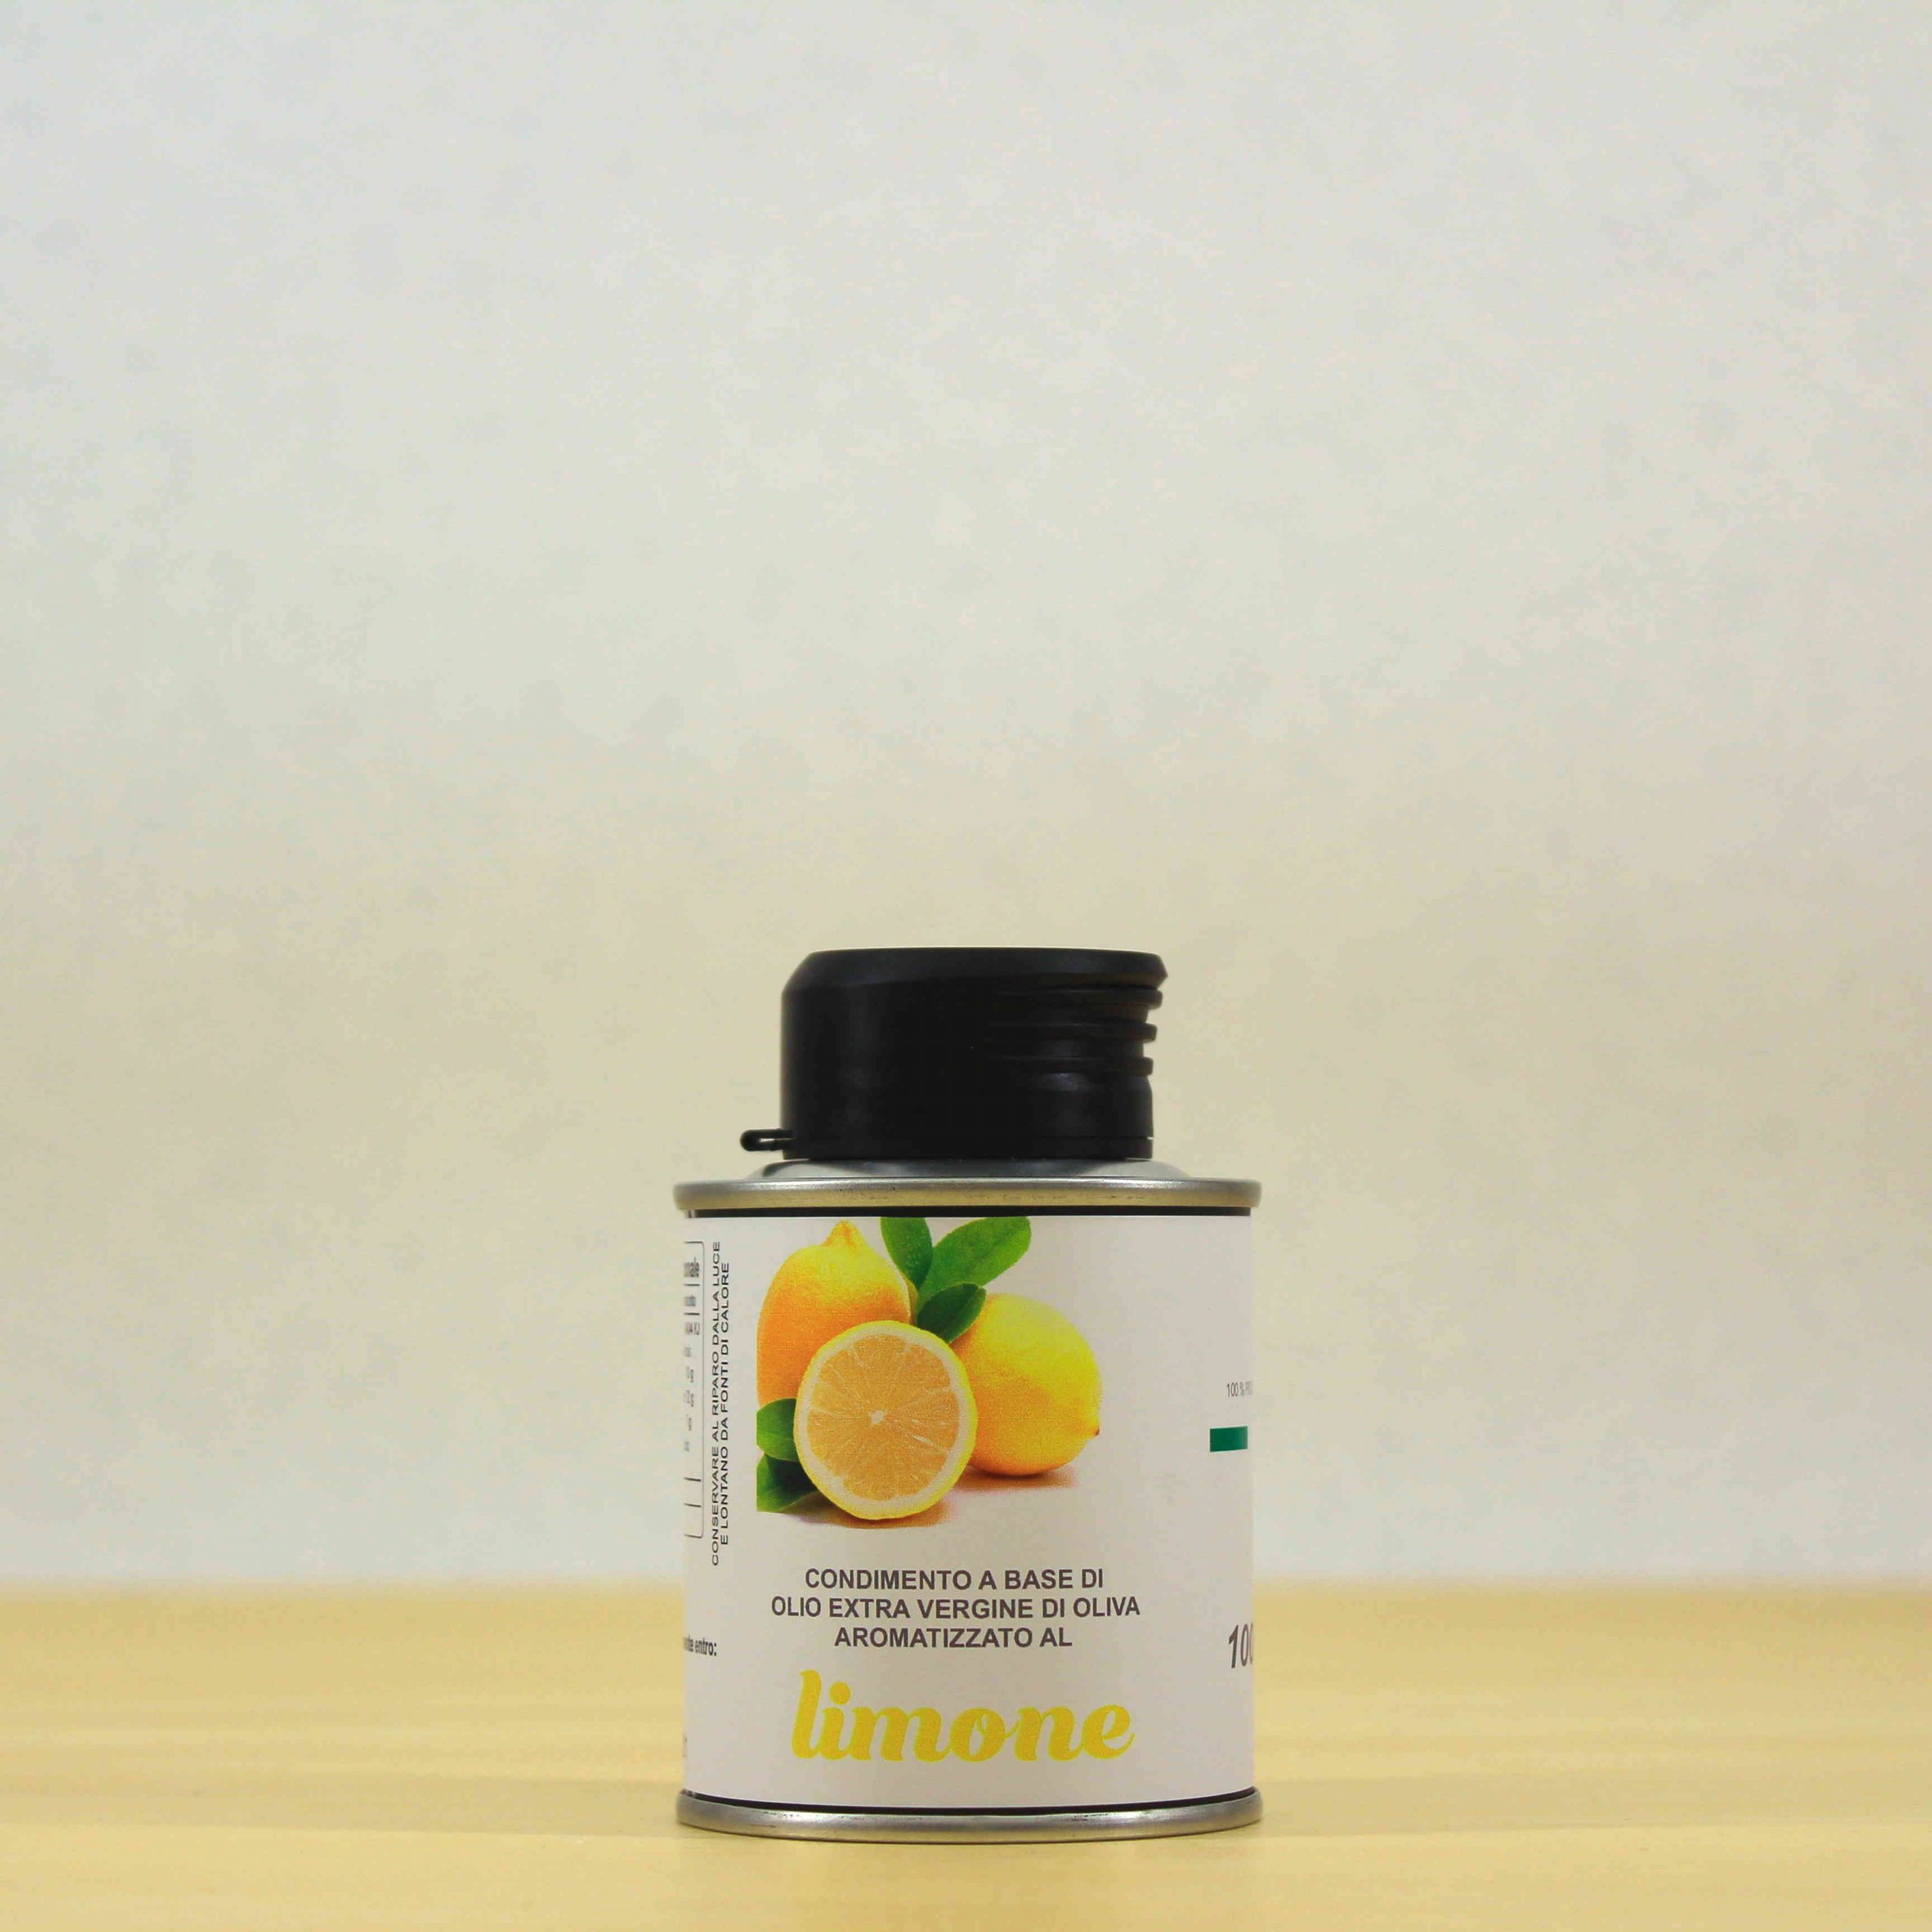 Condimento a base di olio EVO aromatizzato al limone - lattina 10 cl - Cipa Agricola - Acquista online